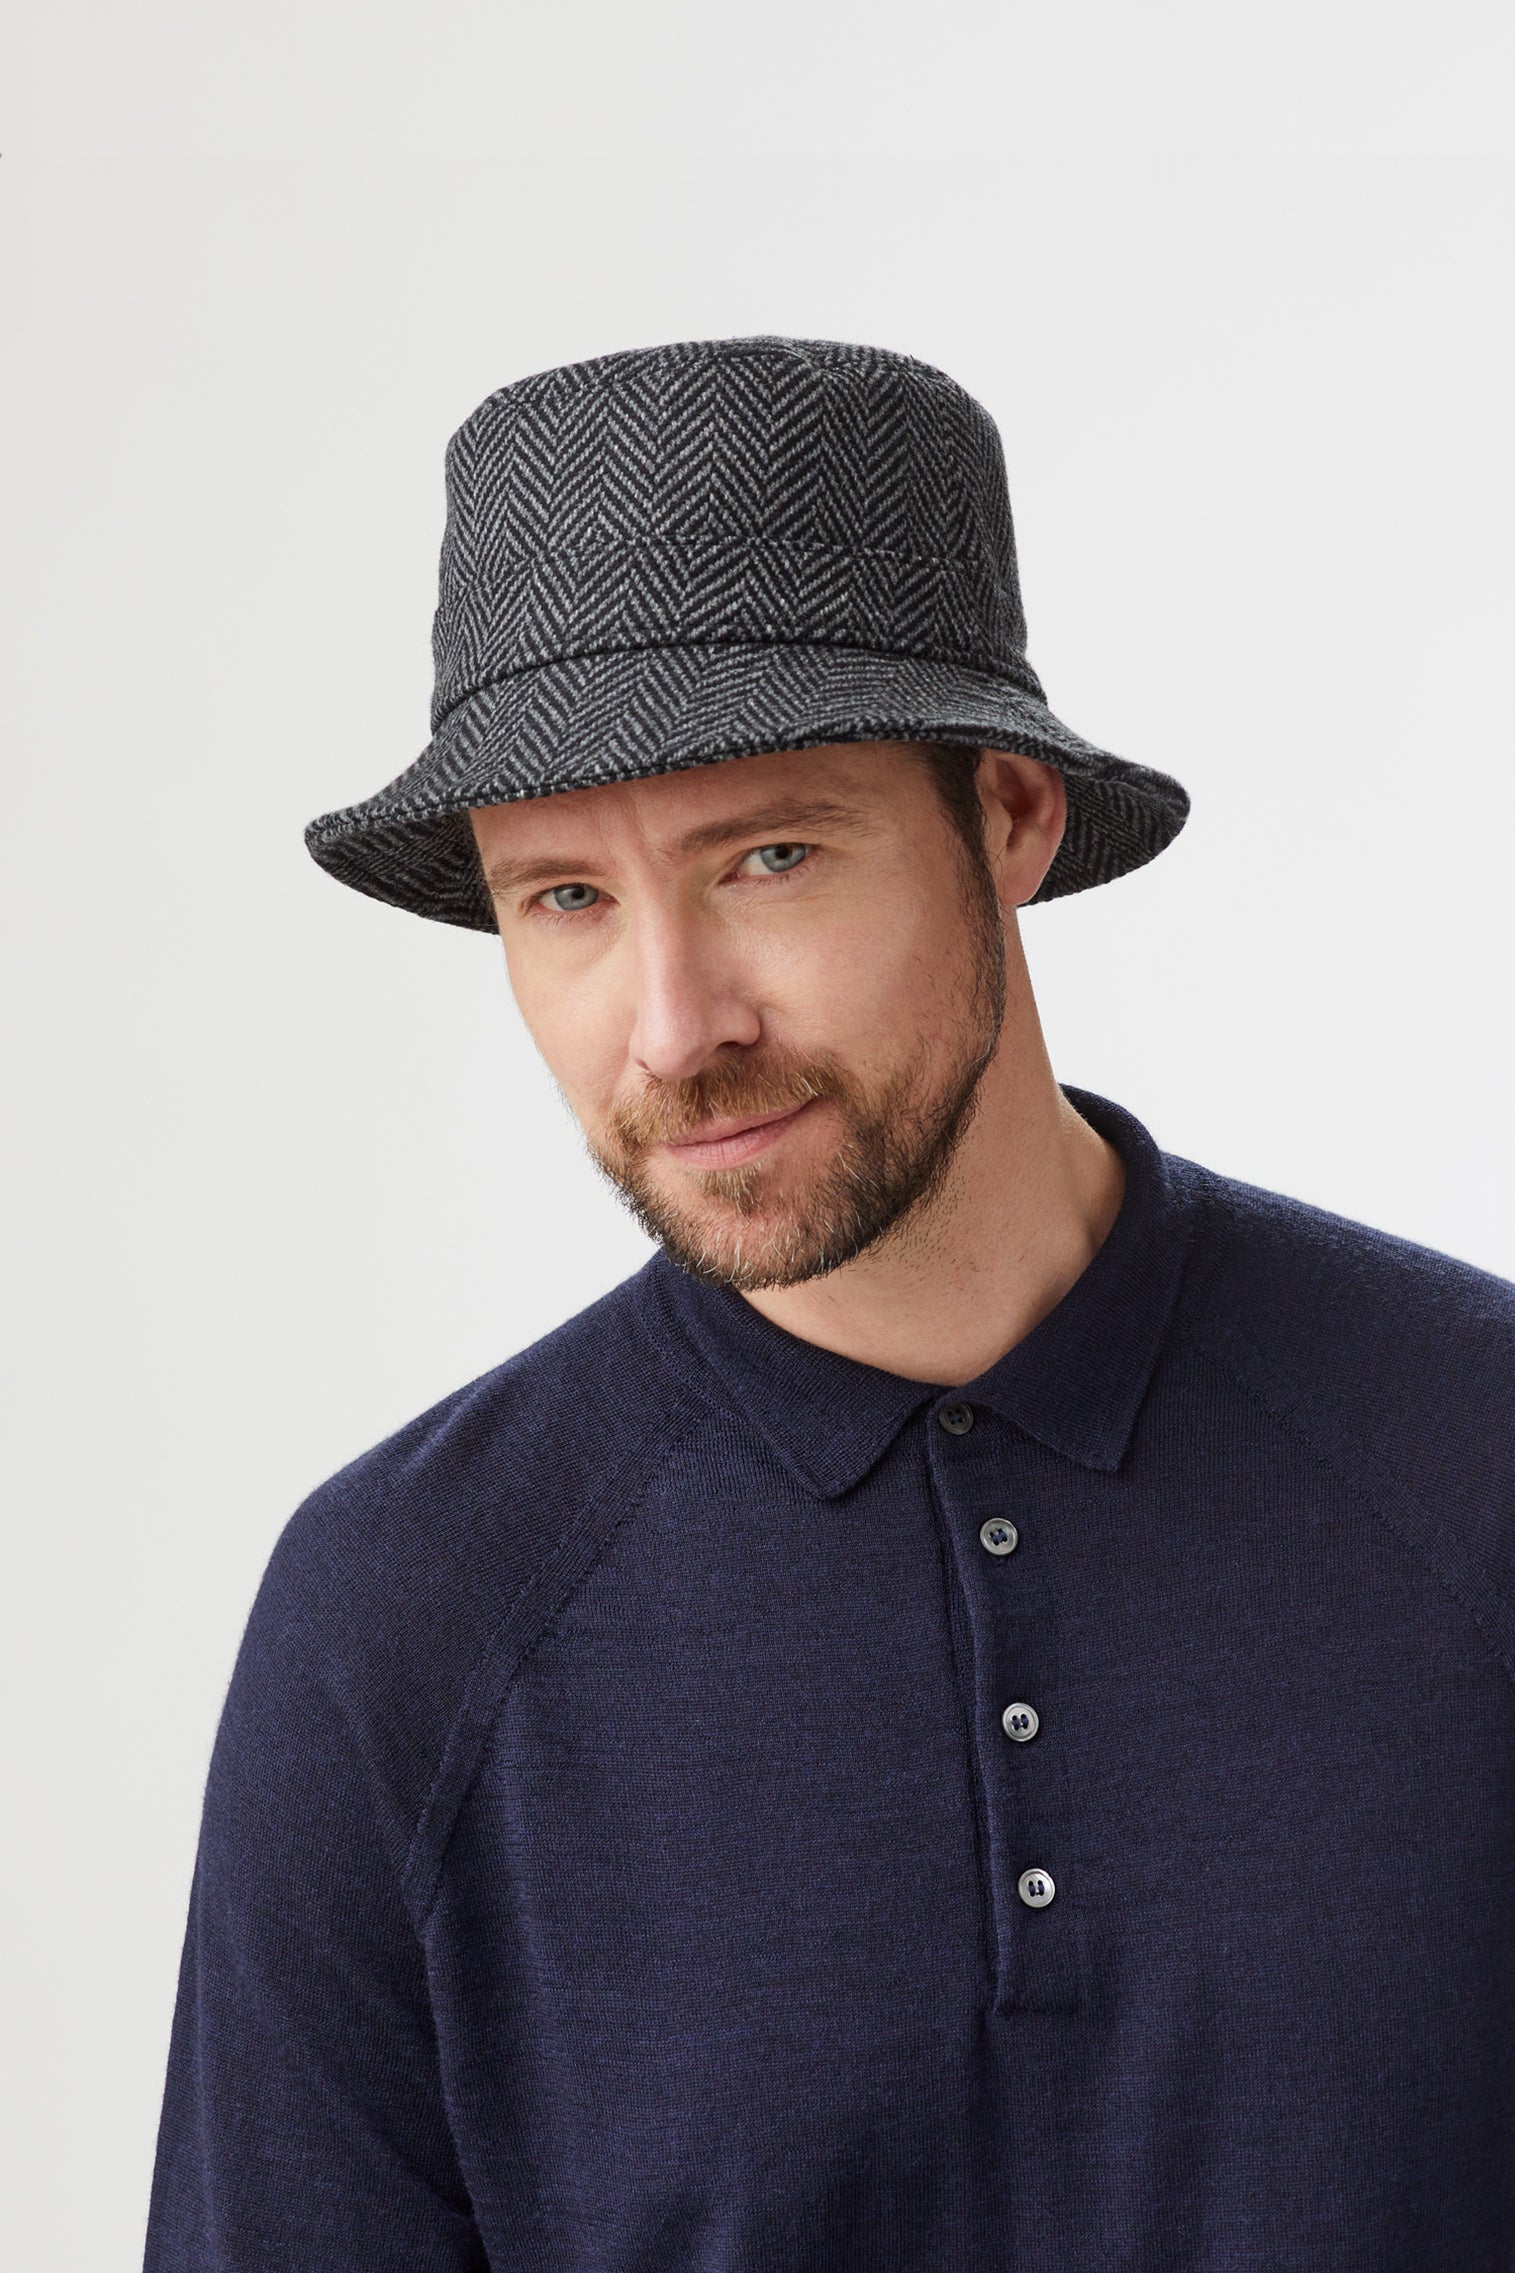 Escorial Wool Bucket Hat - Men's Hats - Lock & Co. Hatters London UK